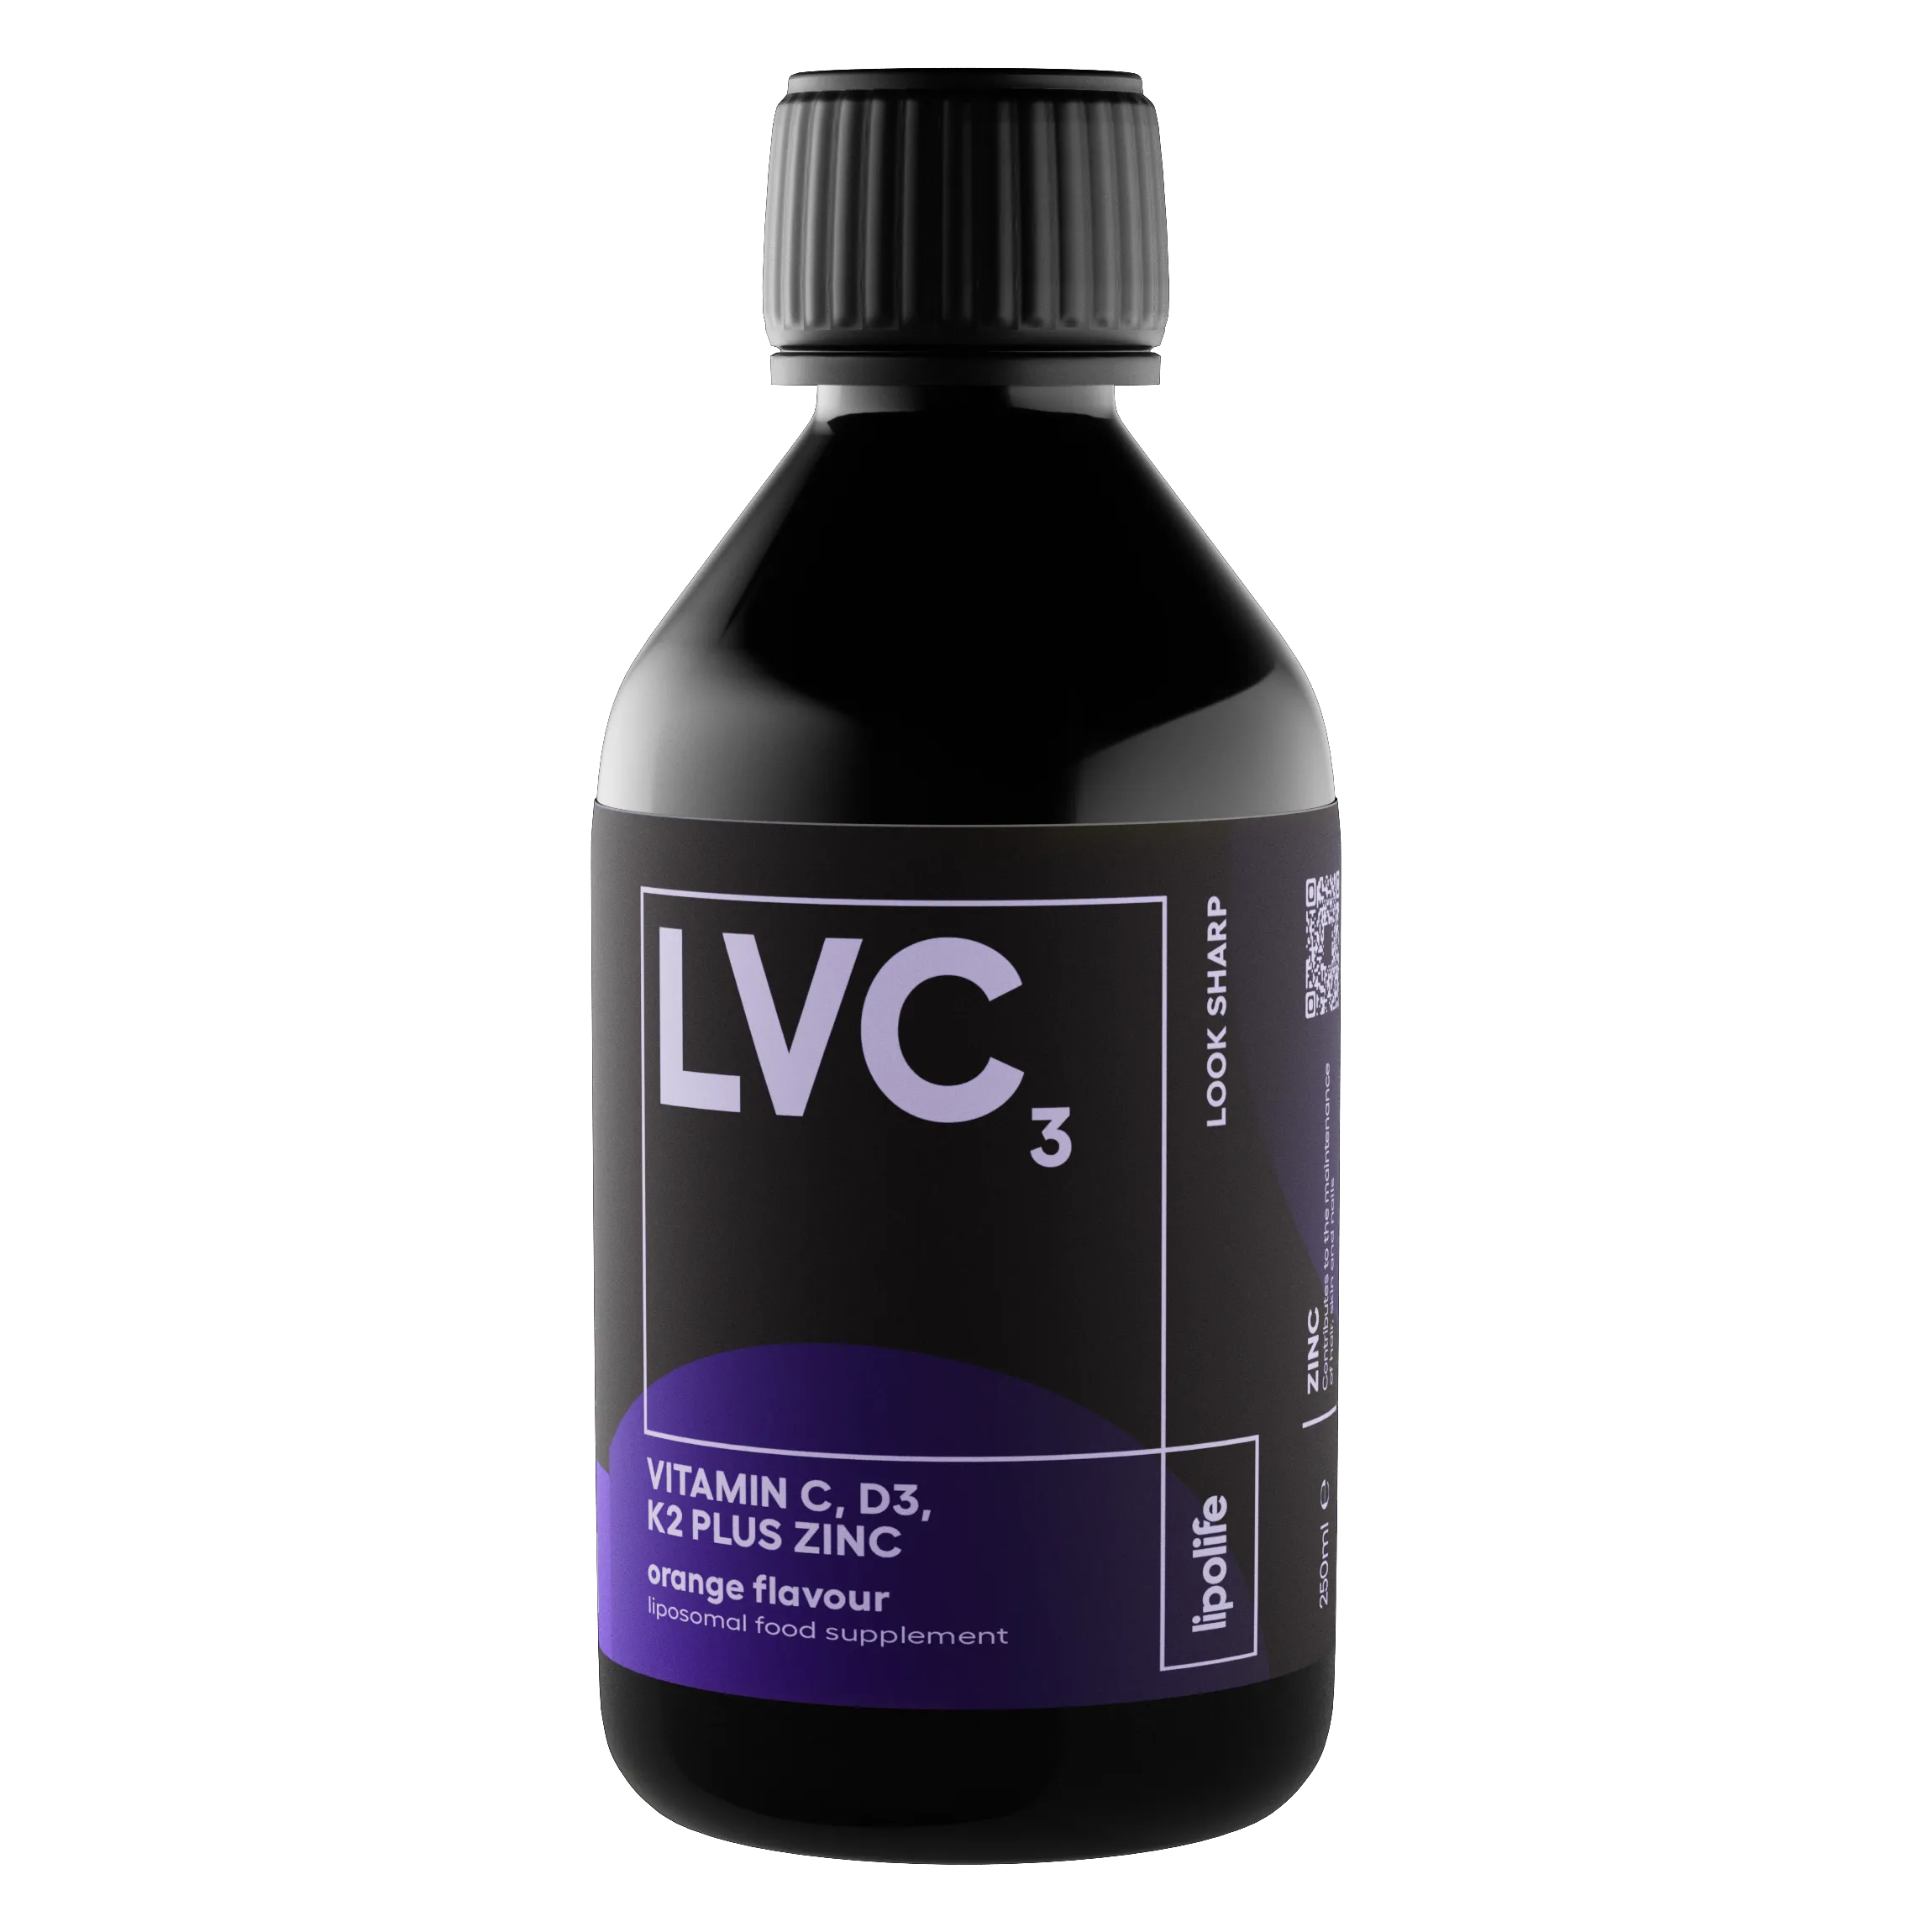 LVC3 - течни и липозомни витамини C, D3, K2 и цинк - портокал, 240 мл.